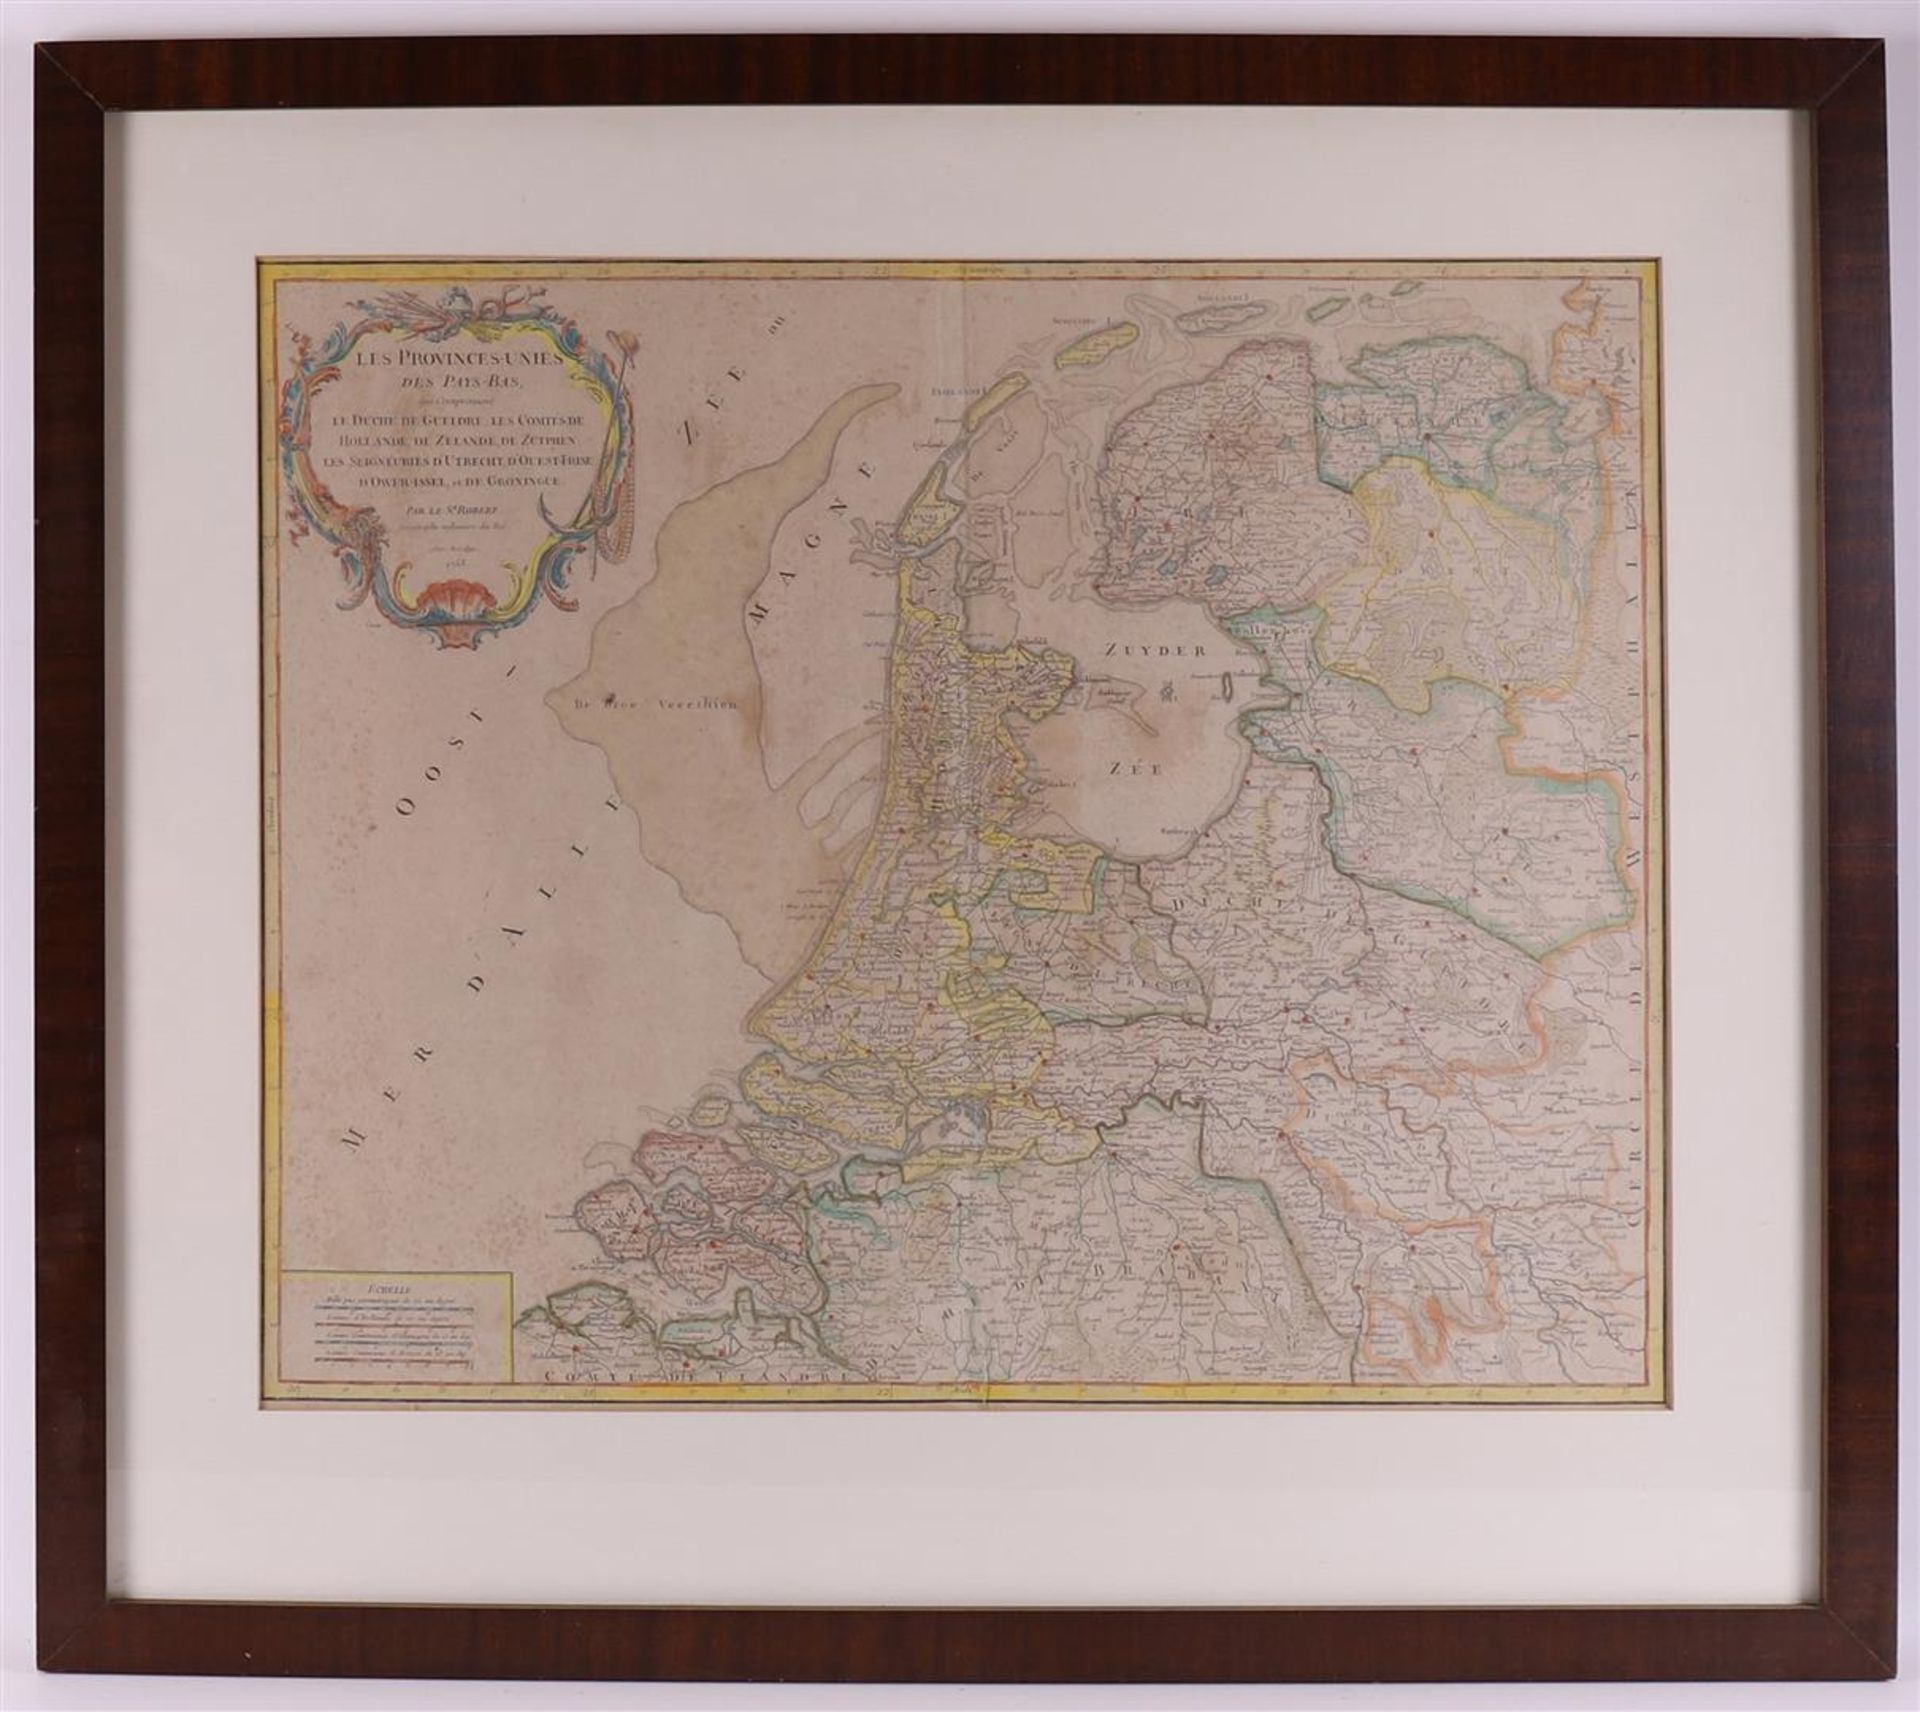 Topography. Les Provinces-Unies des Pays-Bas, qui comprennent le duché de Gueldre, les comtés de